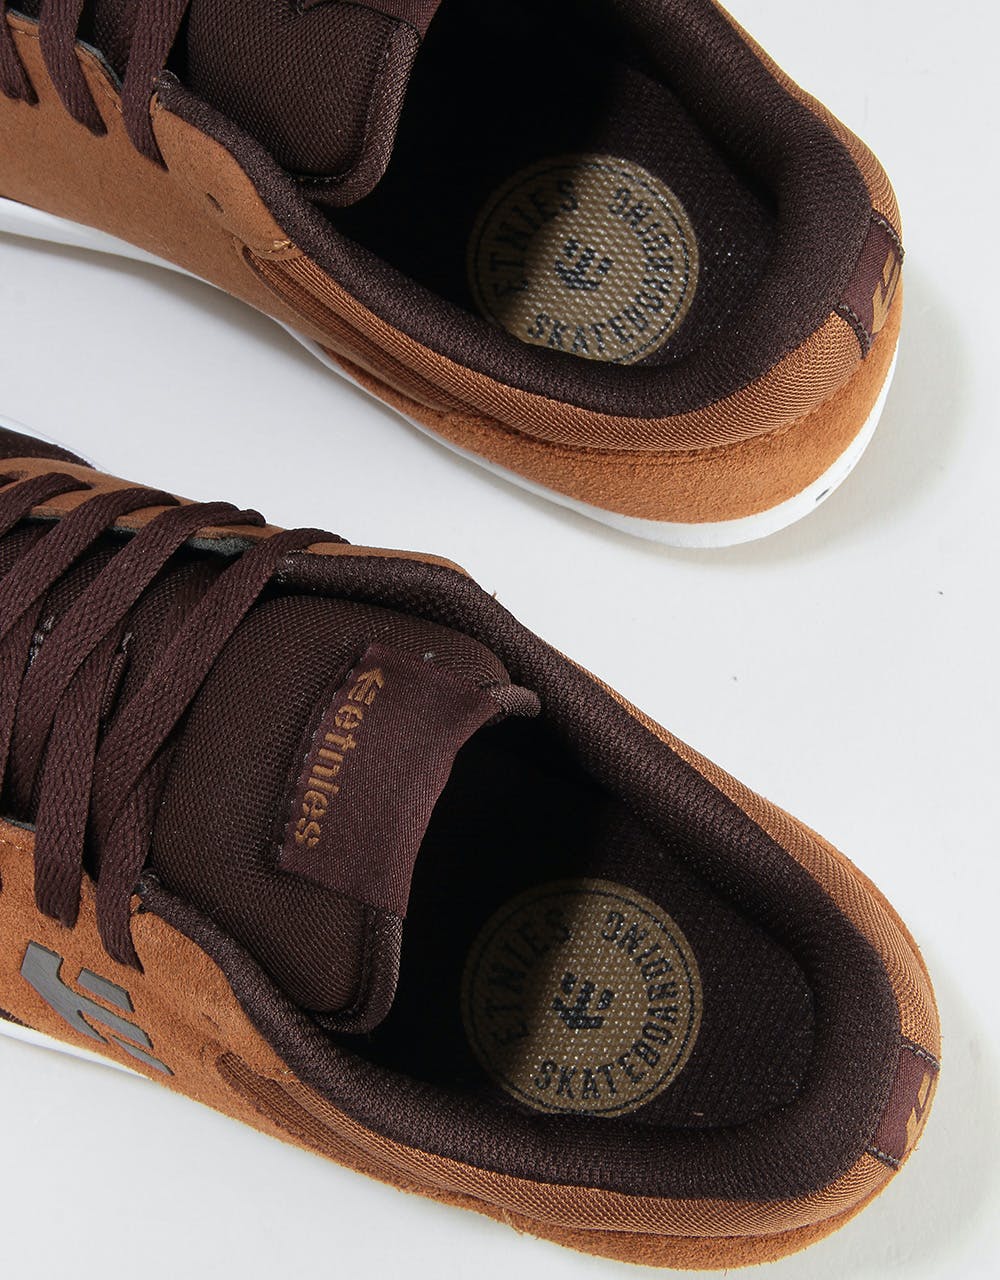 Etnies x Michelin Marana Skate Shoes - Brown/Tan